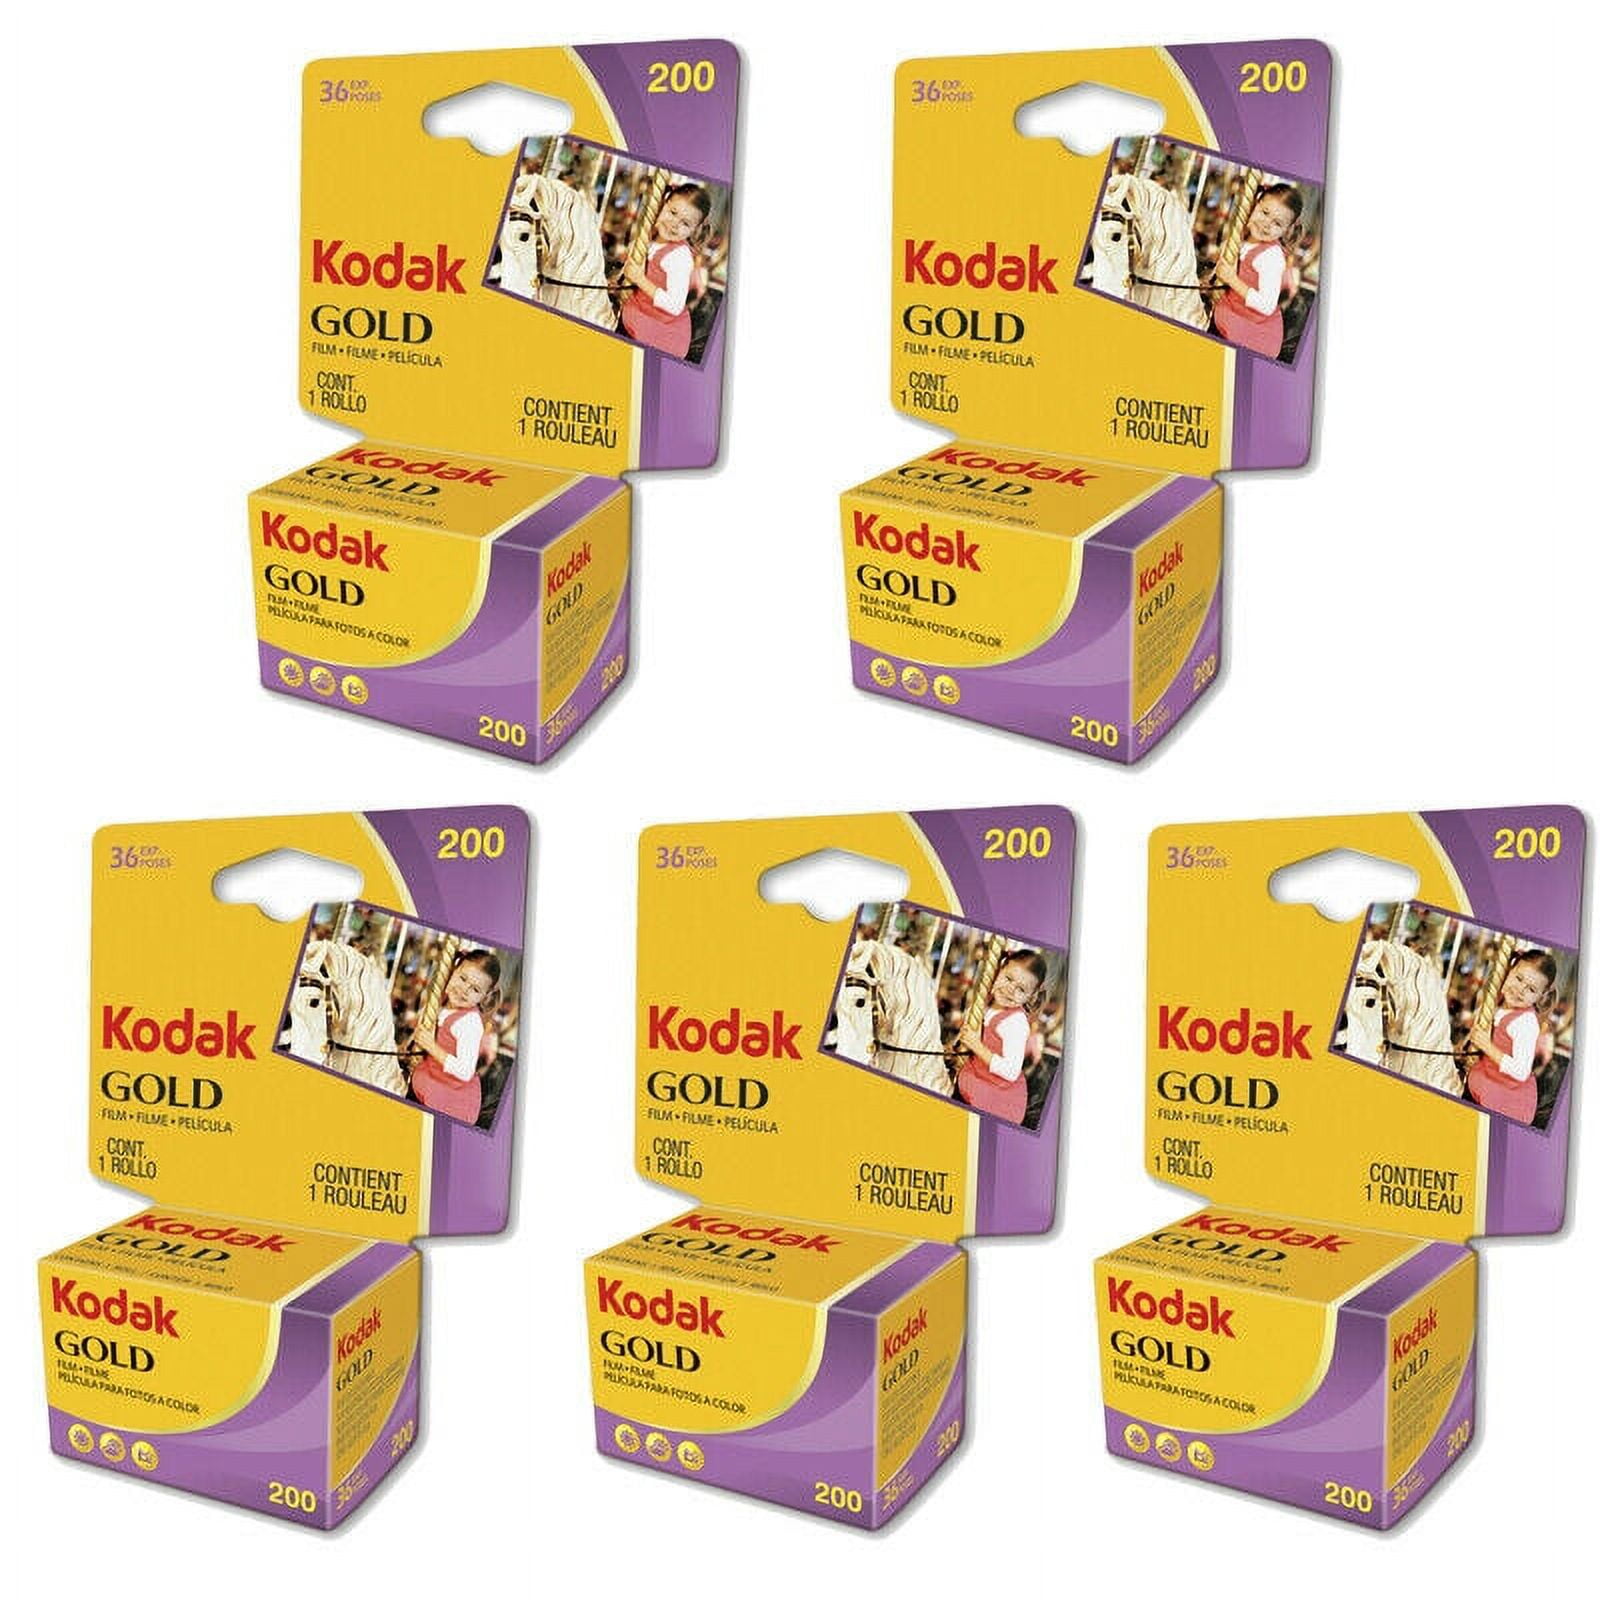 Kodak Gold 200 - 36 exp - Frame // Rennes